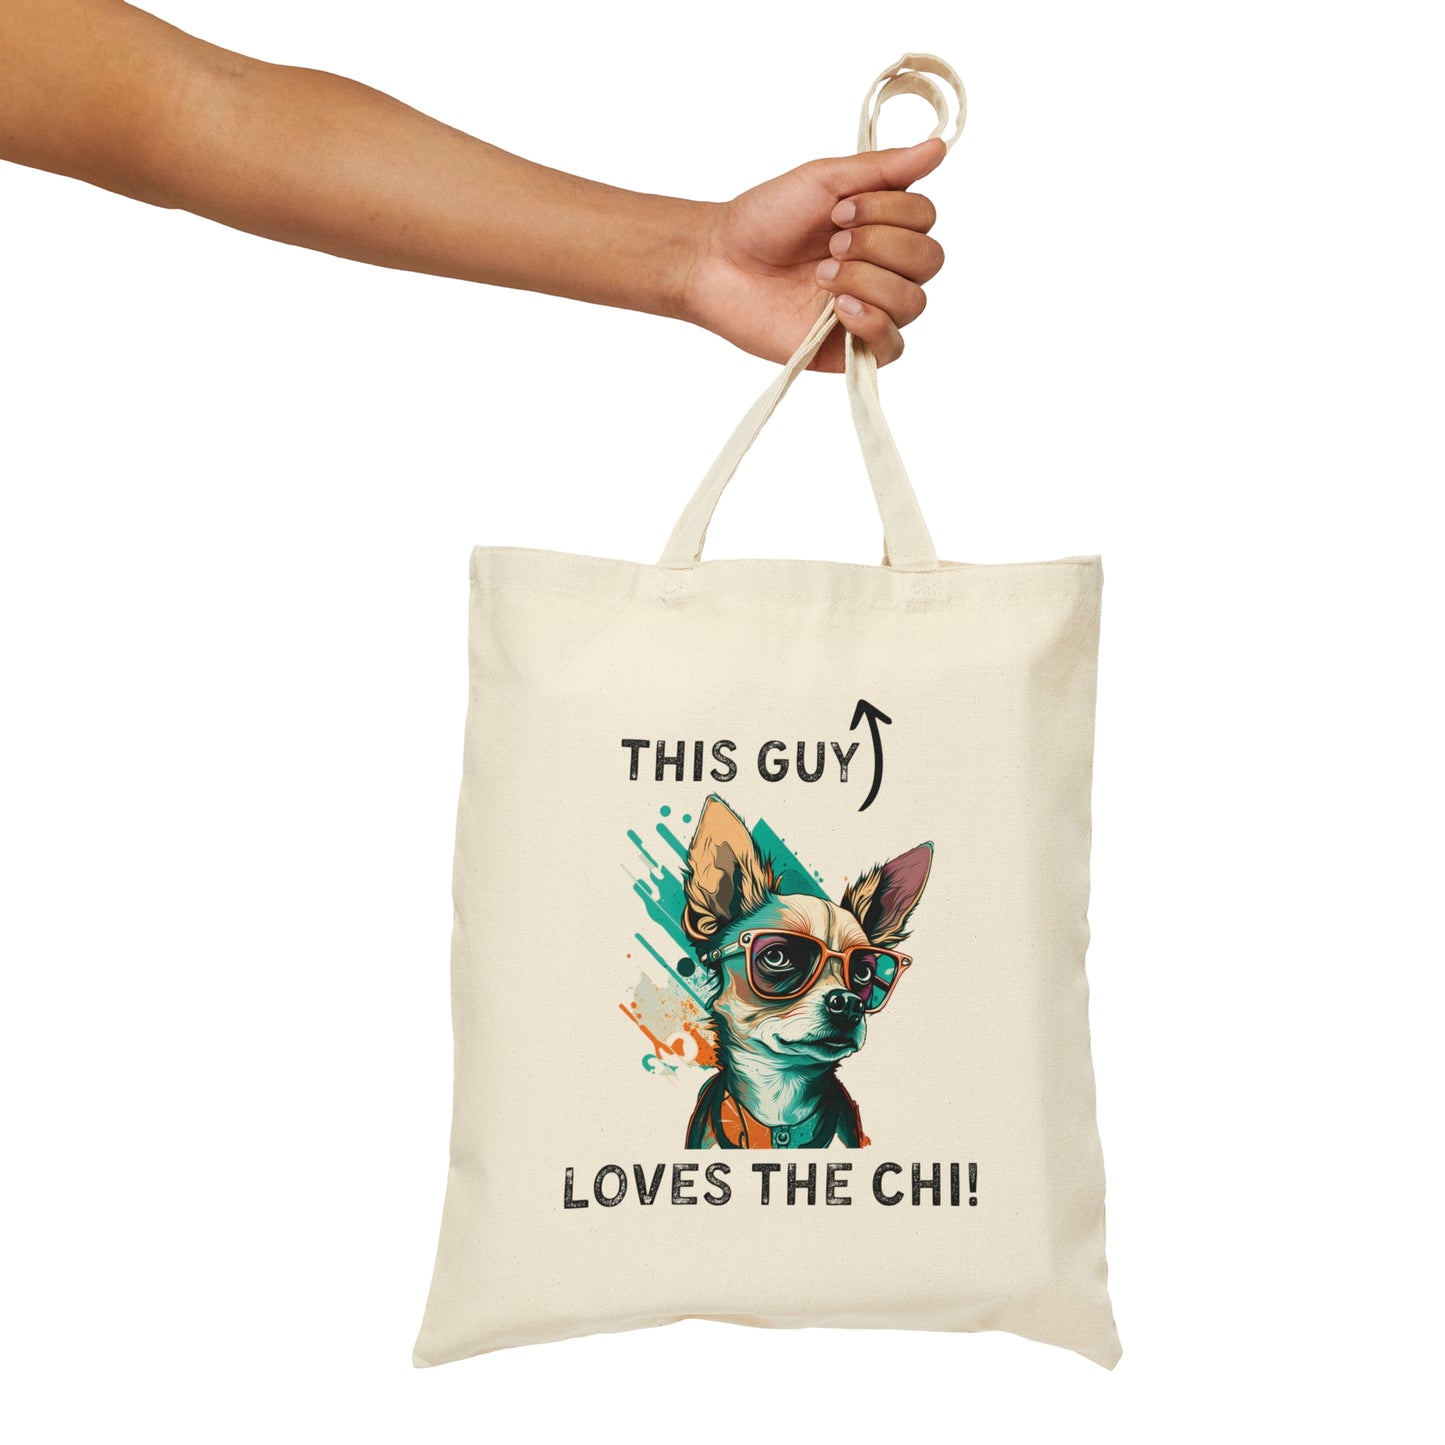 Chihuahua tote bags